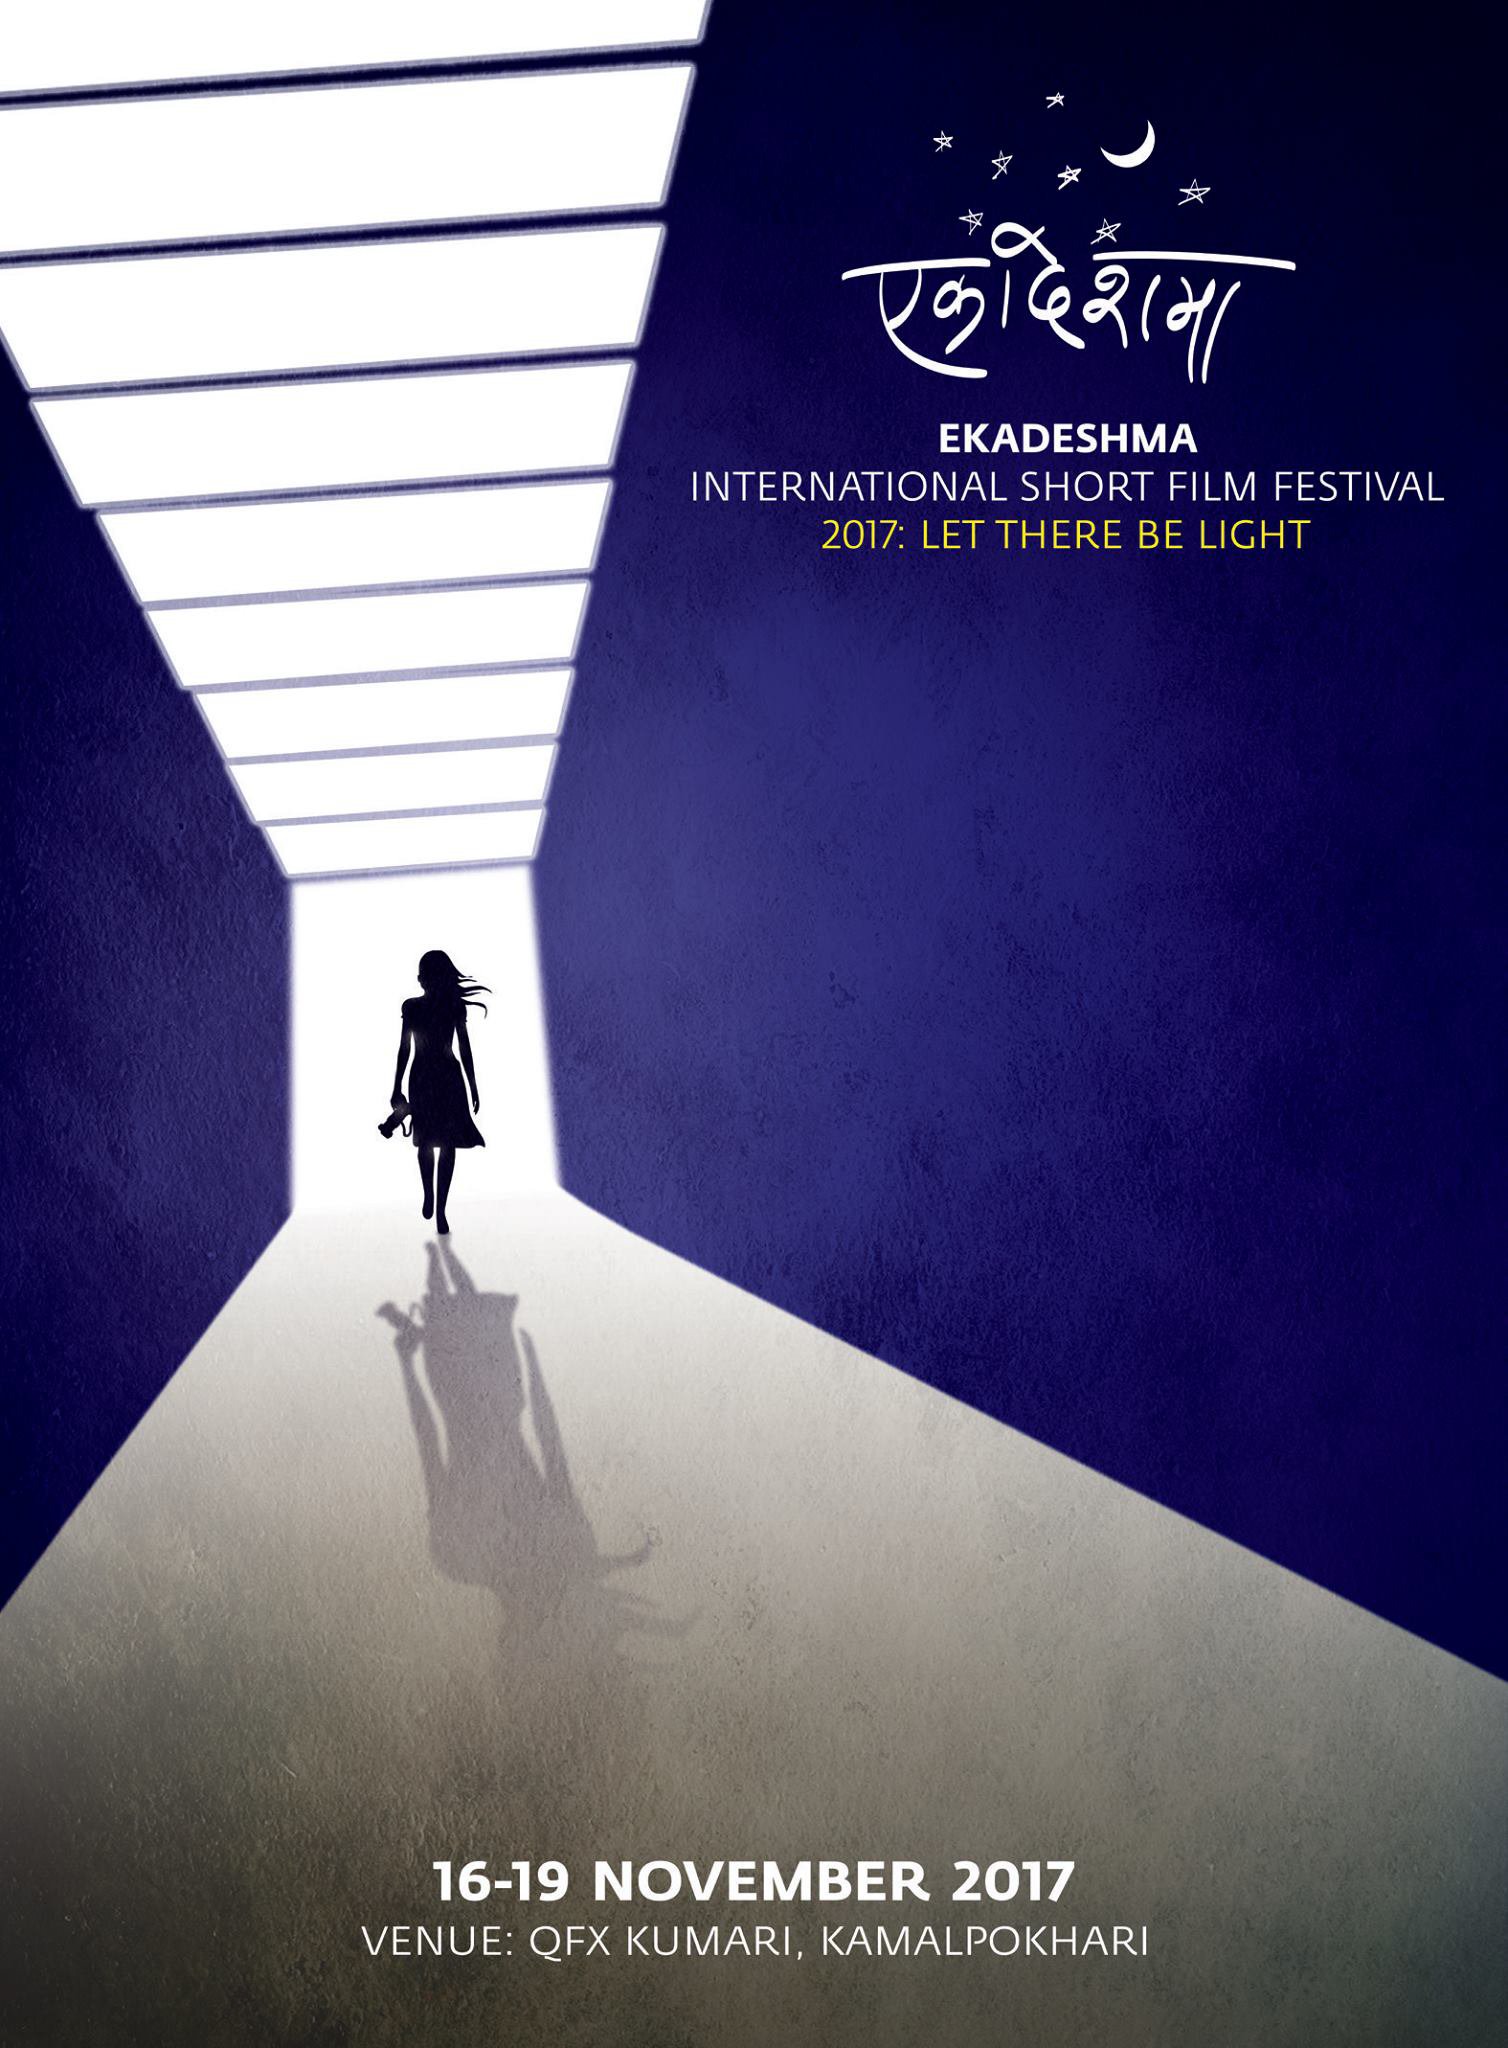 Mega Sized TV Poster Image for Ekadeshma International Short Film Festival 